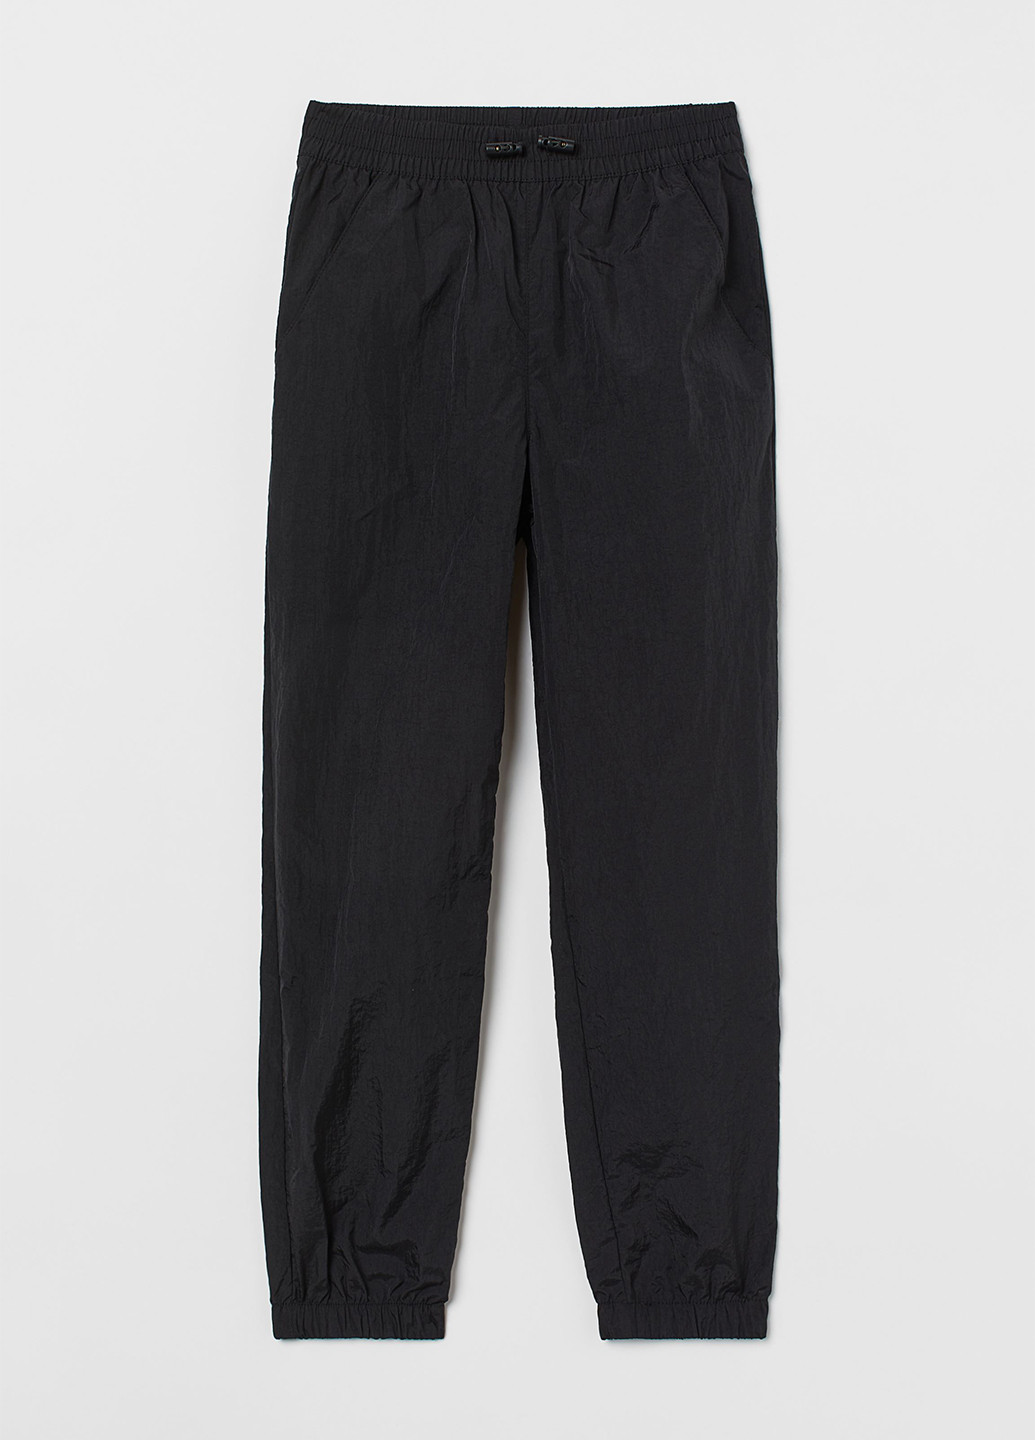 Черные спортивные демисезонные джоггеры брюки H&M